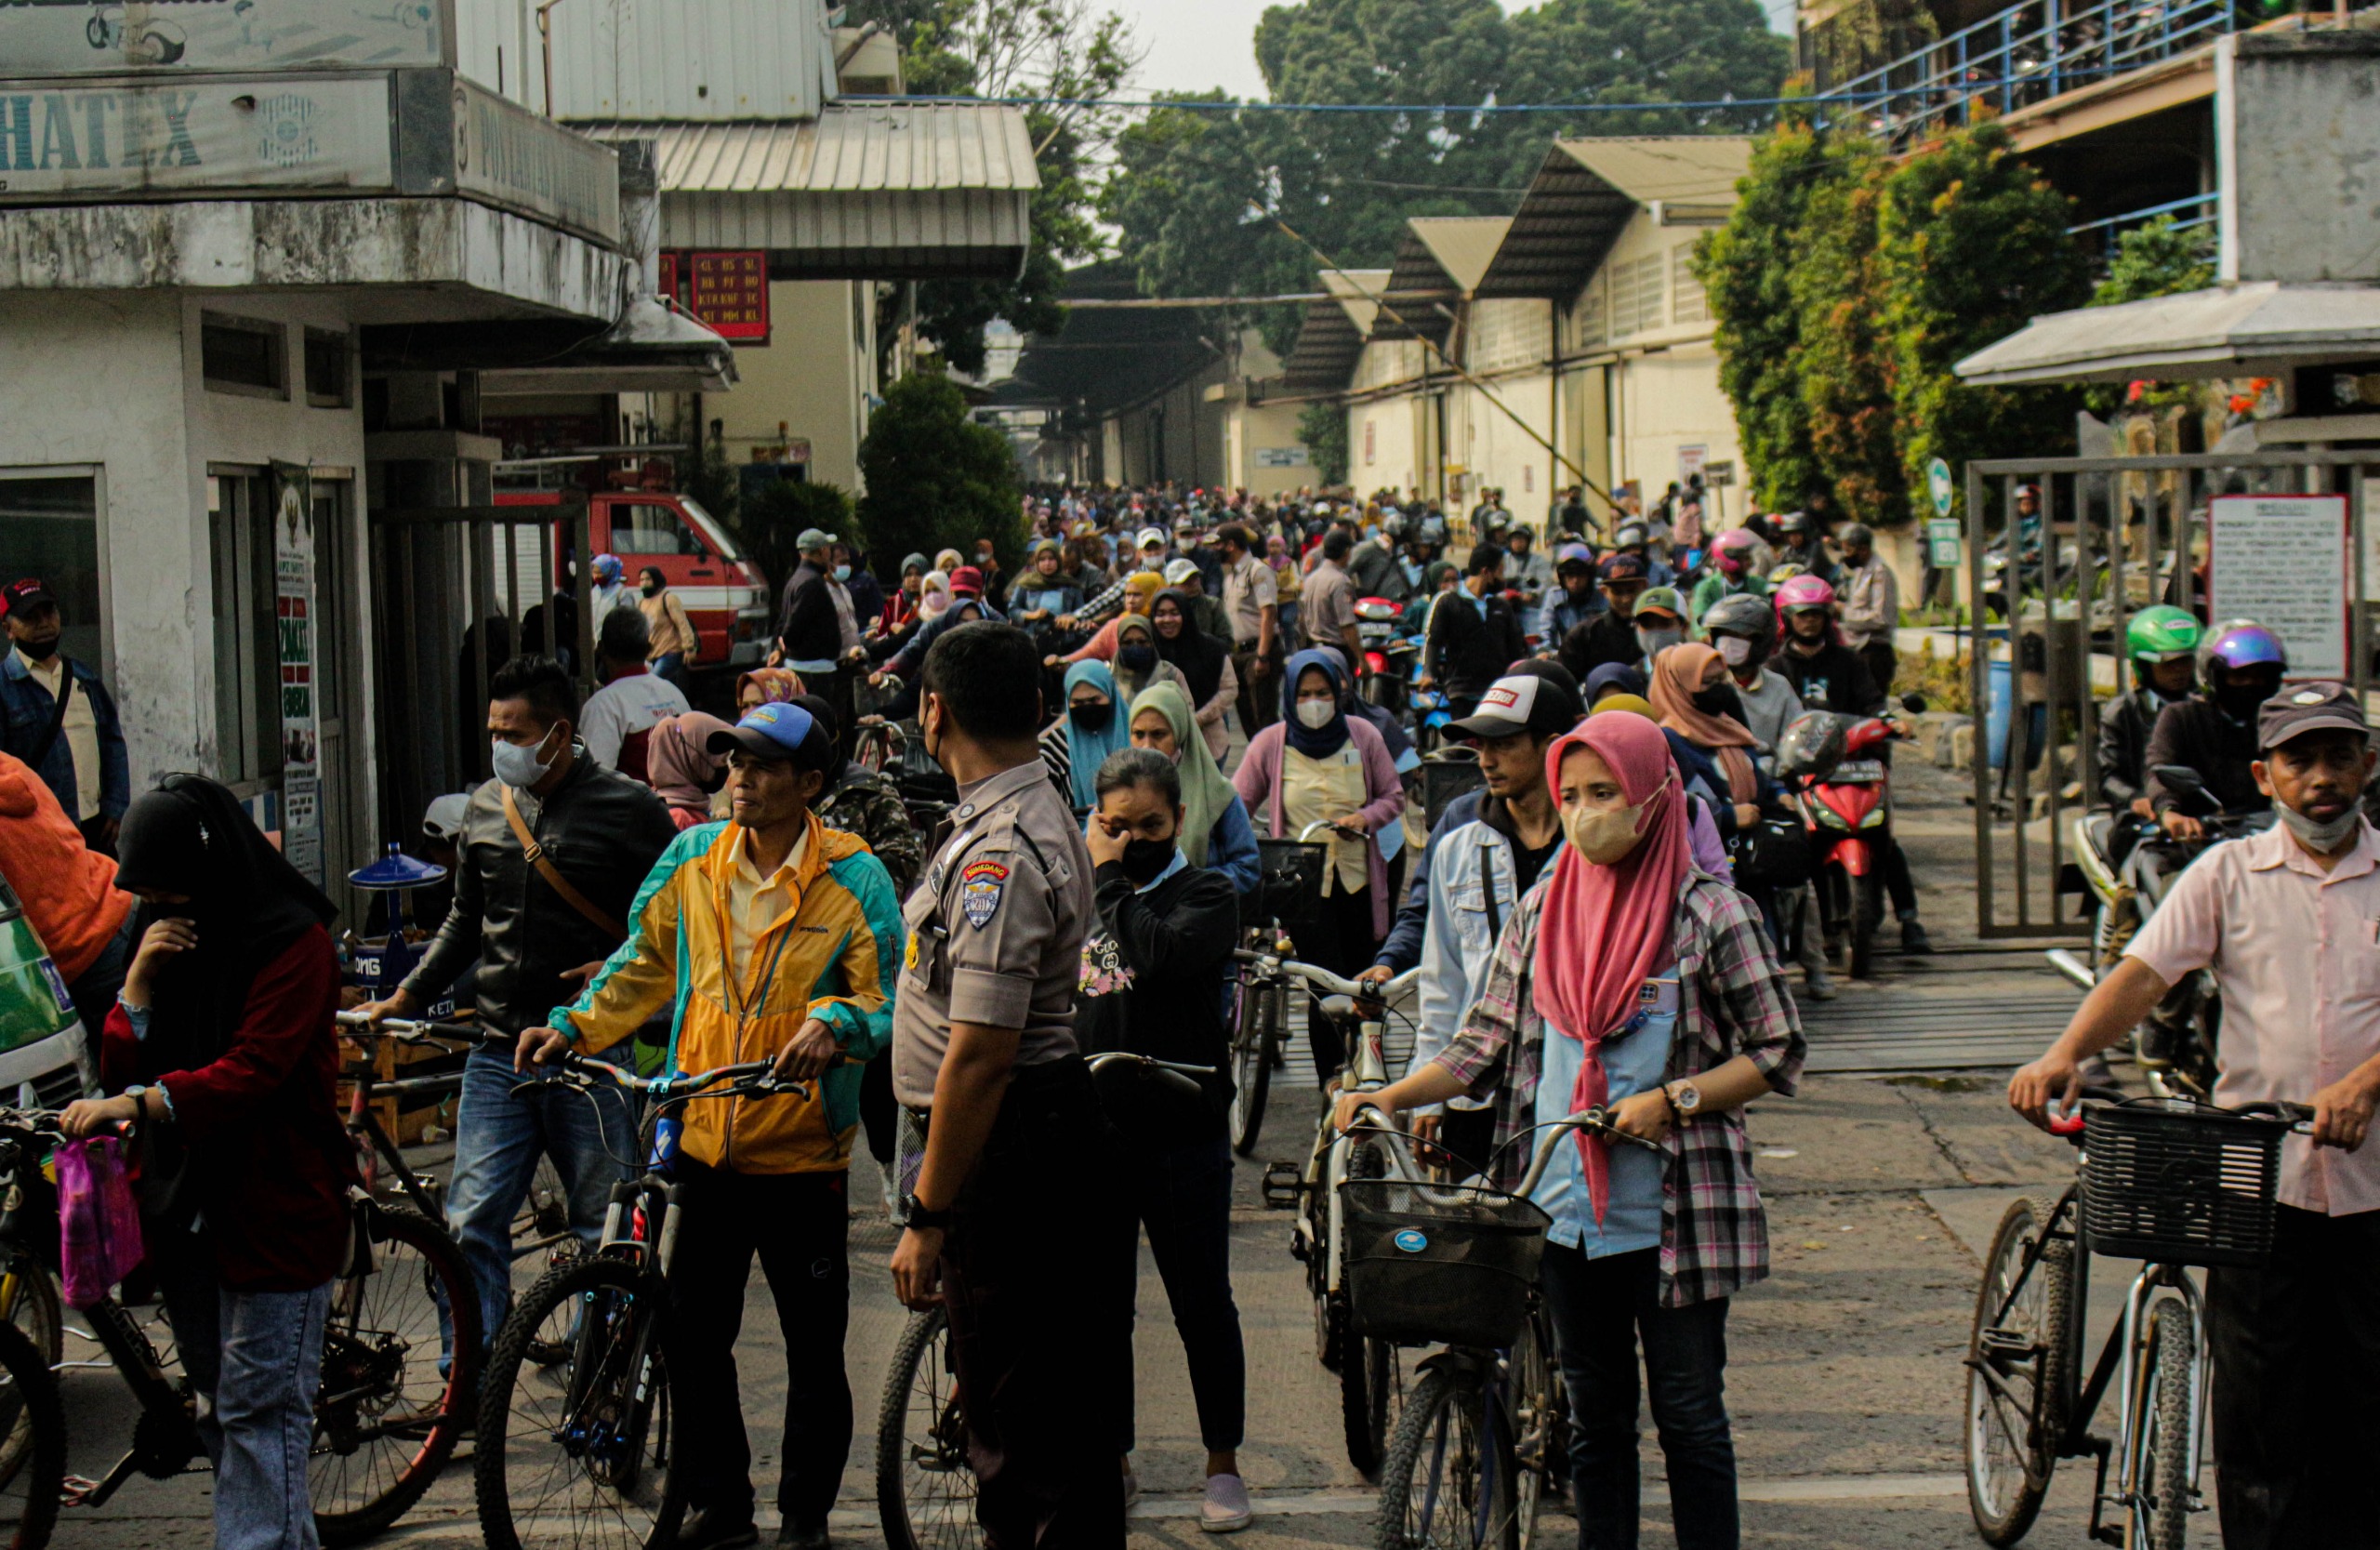 Ist. pergantian shift ribuan buruh pabrik di kawasan Rancaekek, Kabupaten Bandung. (Pandu Muslim/Jabar Ekspres)